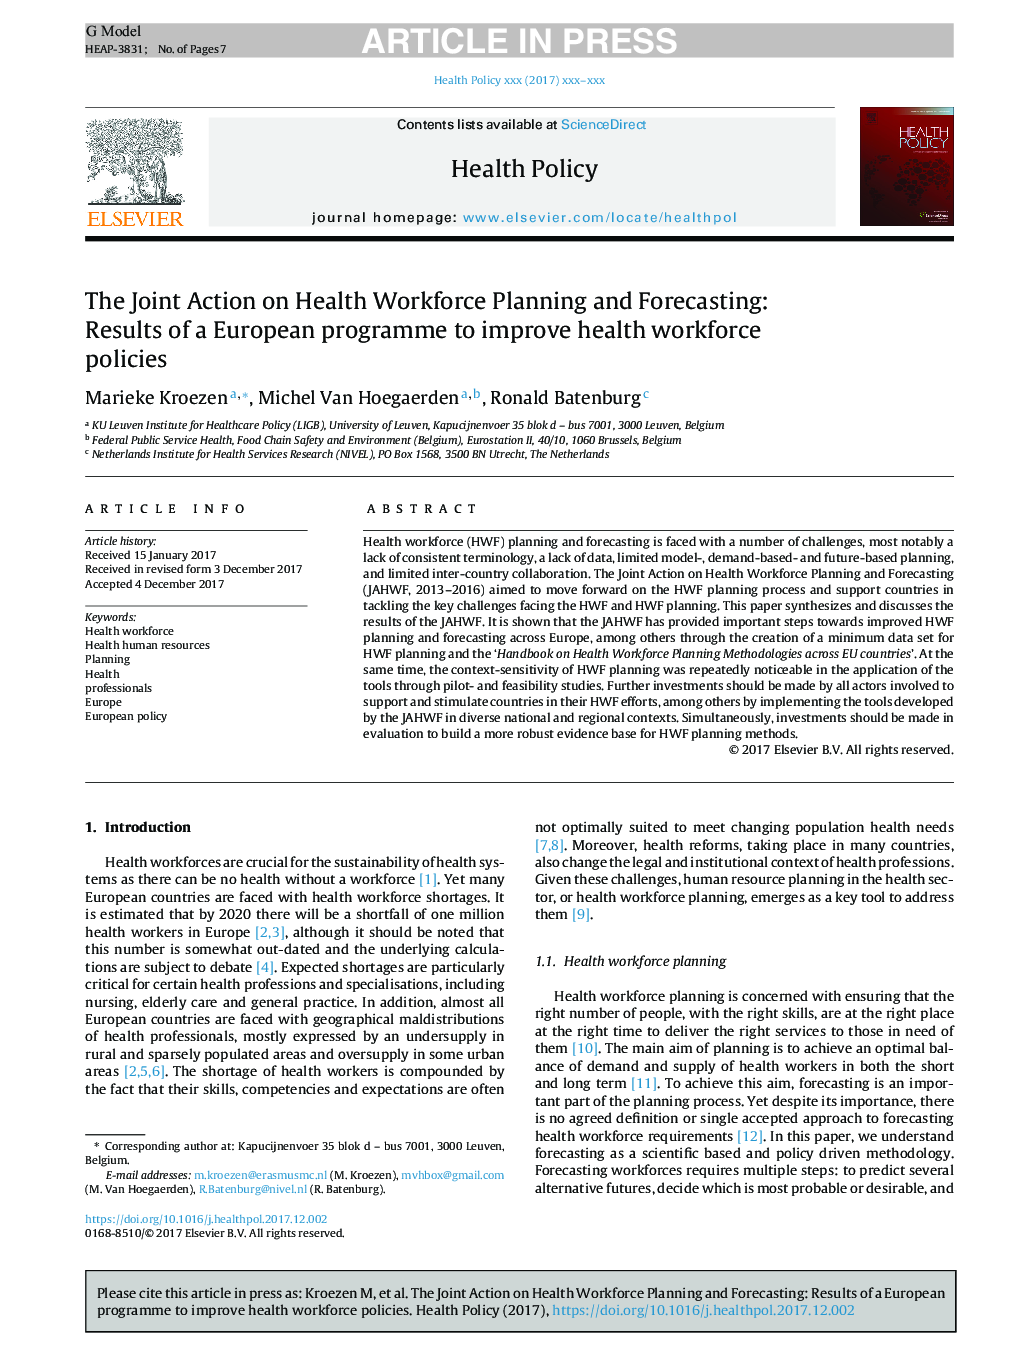 اقدام مشترک در زمینه برنامه ریزی و پیش بینی نیروی کار در زمینه بهداشت و درمان: نتایج یک برنامه اروپایی برای بهبود سیاست های نیروی کار سلامت 